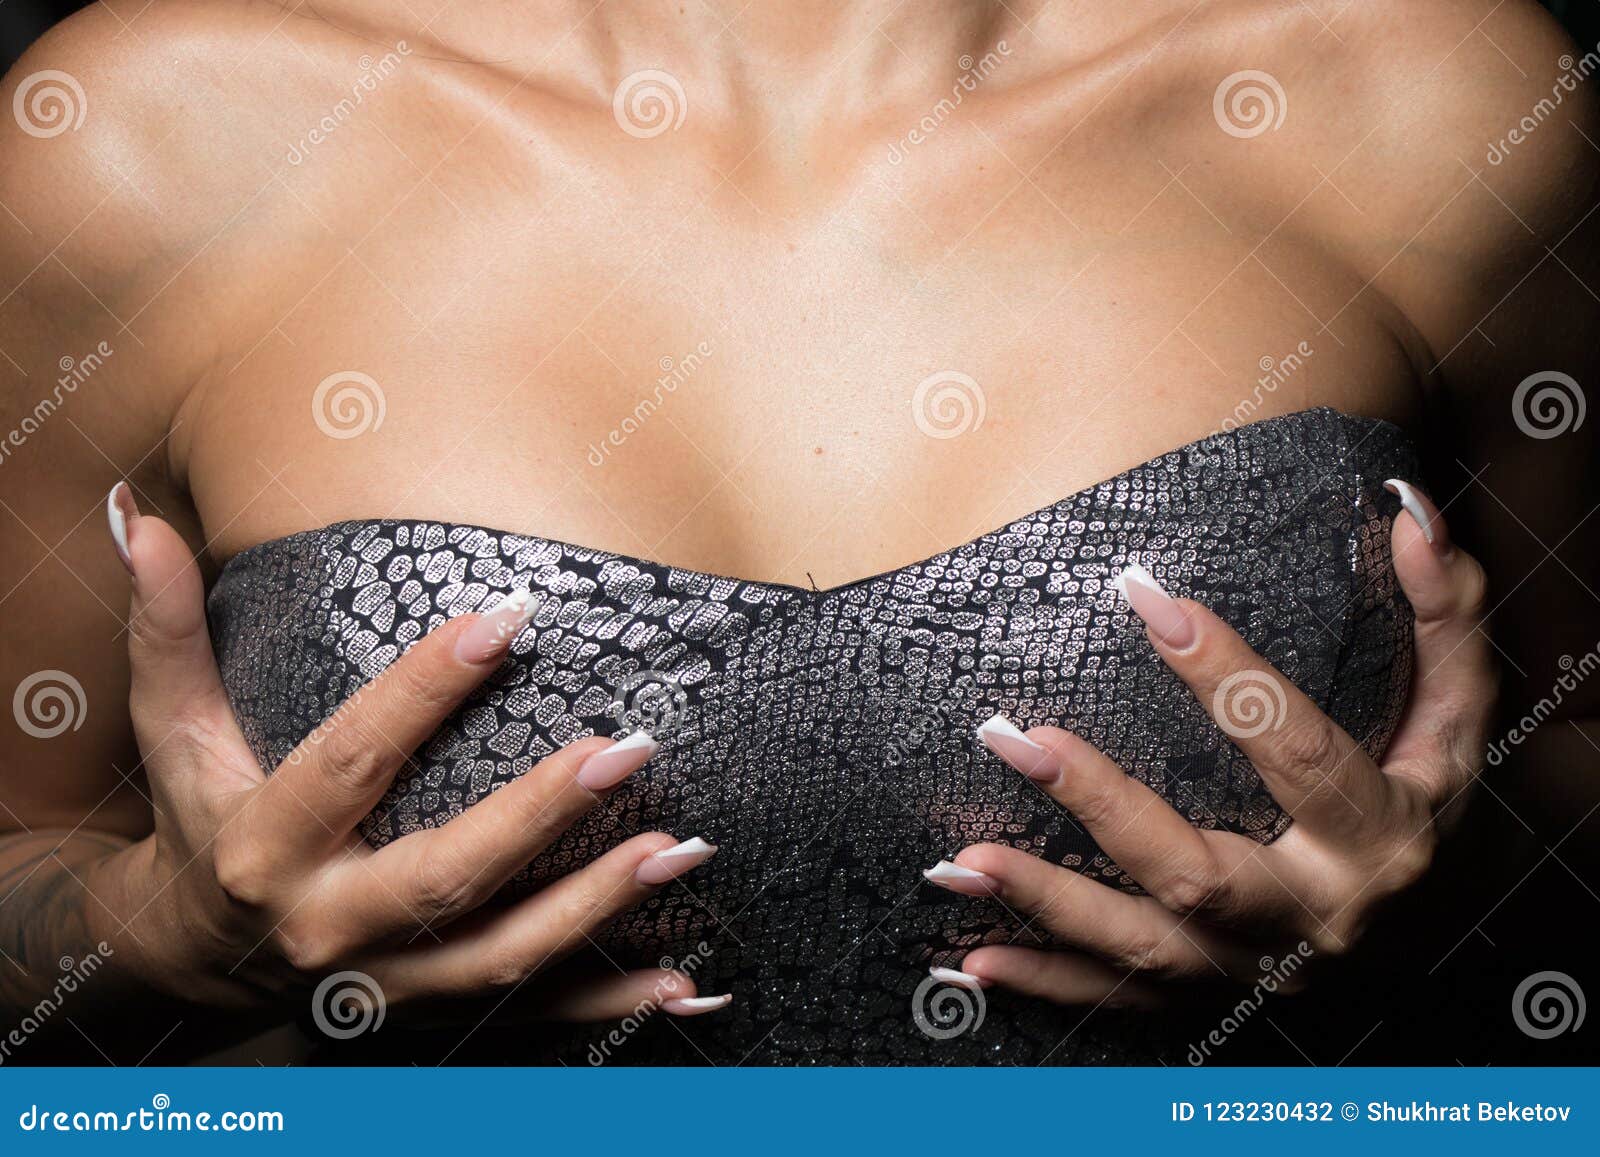 фото мужчин с женскими грудями фото 84